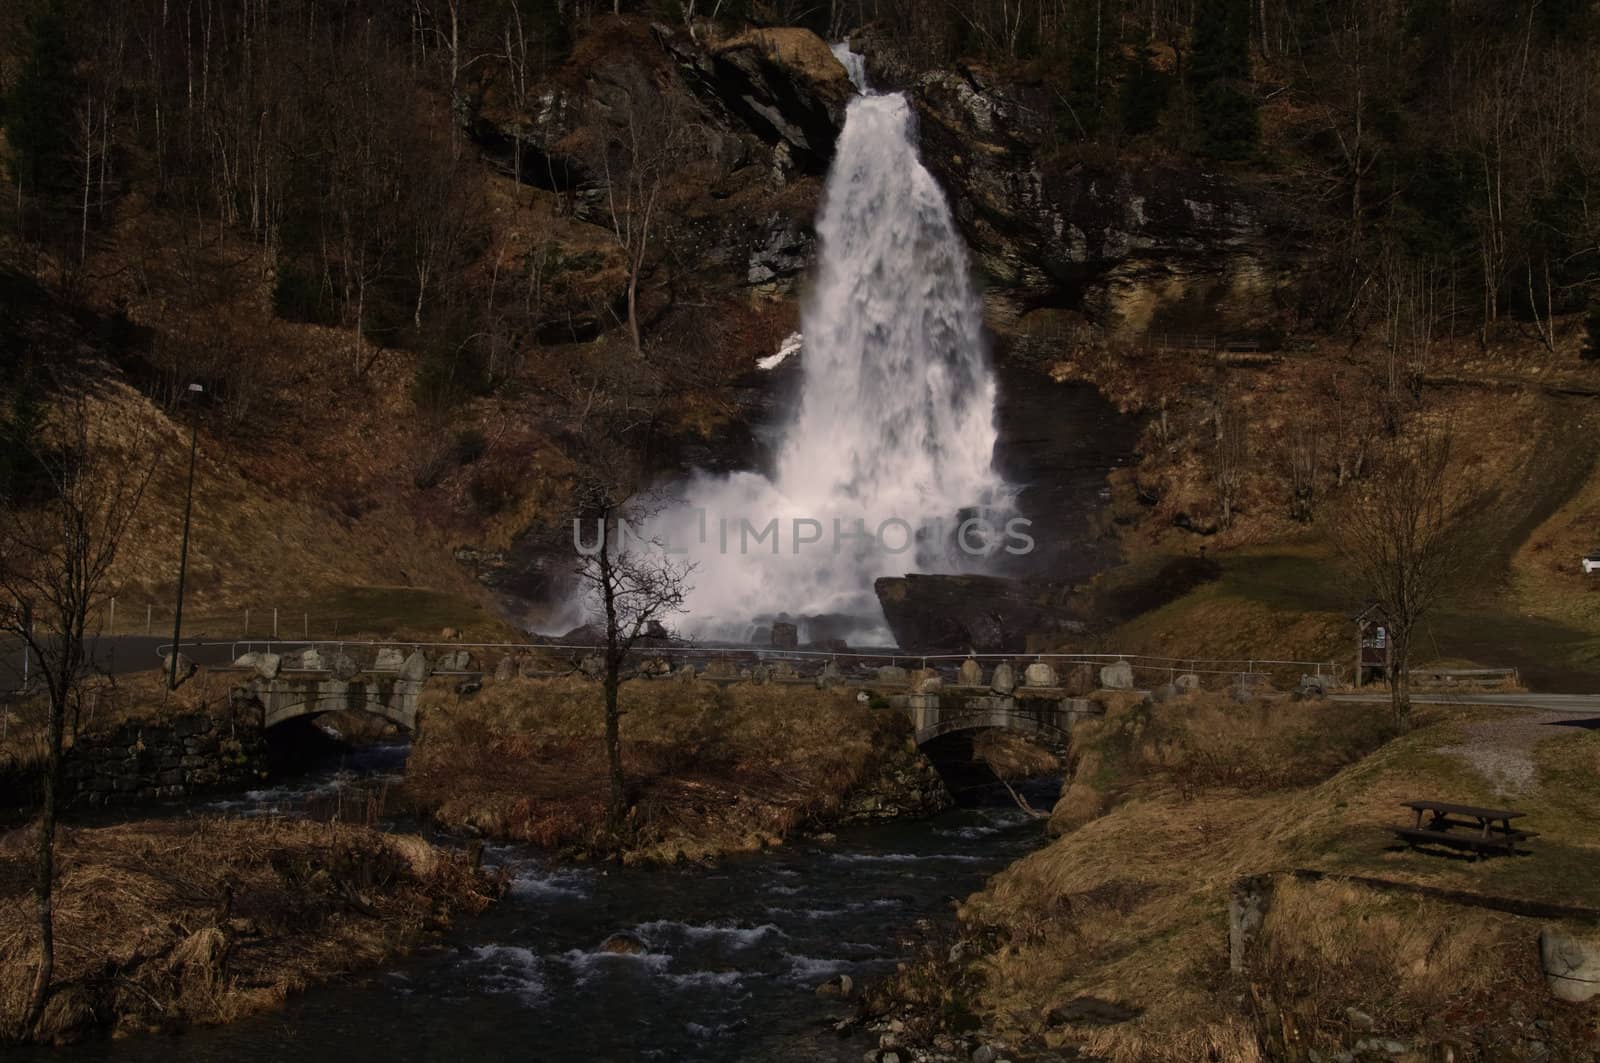 Steinsdalsfossen Waterfall by GryT